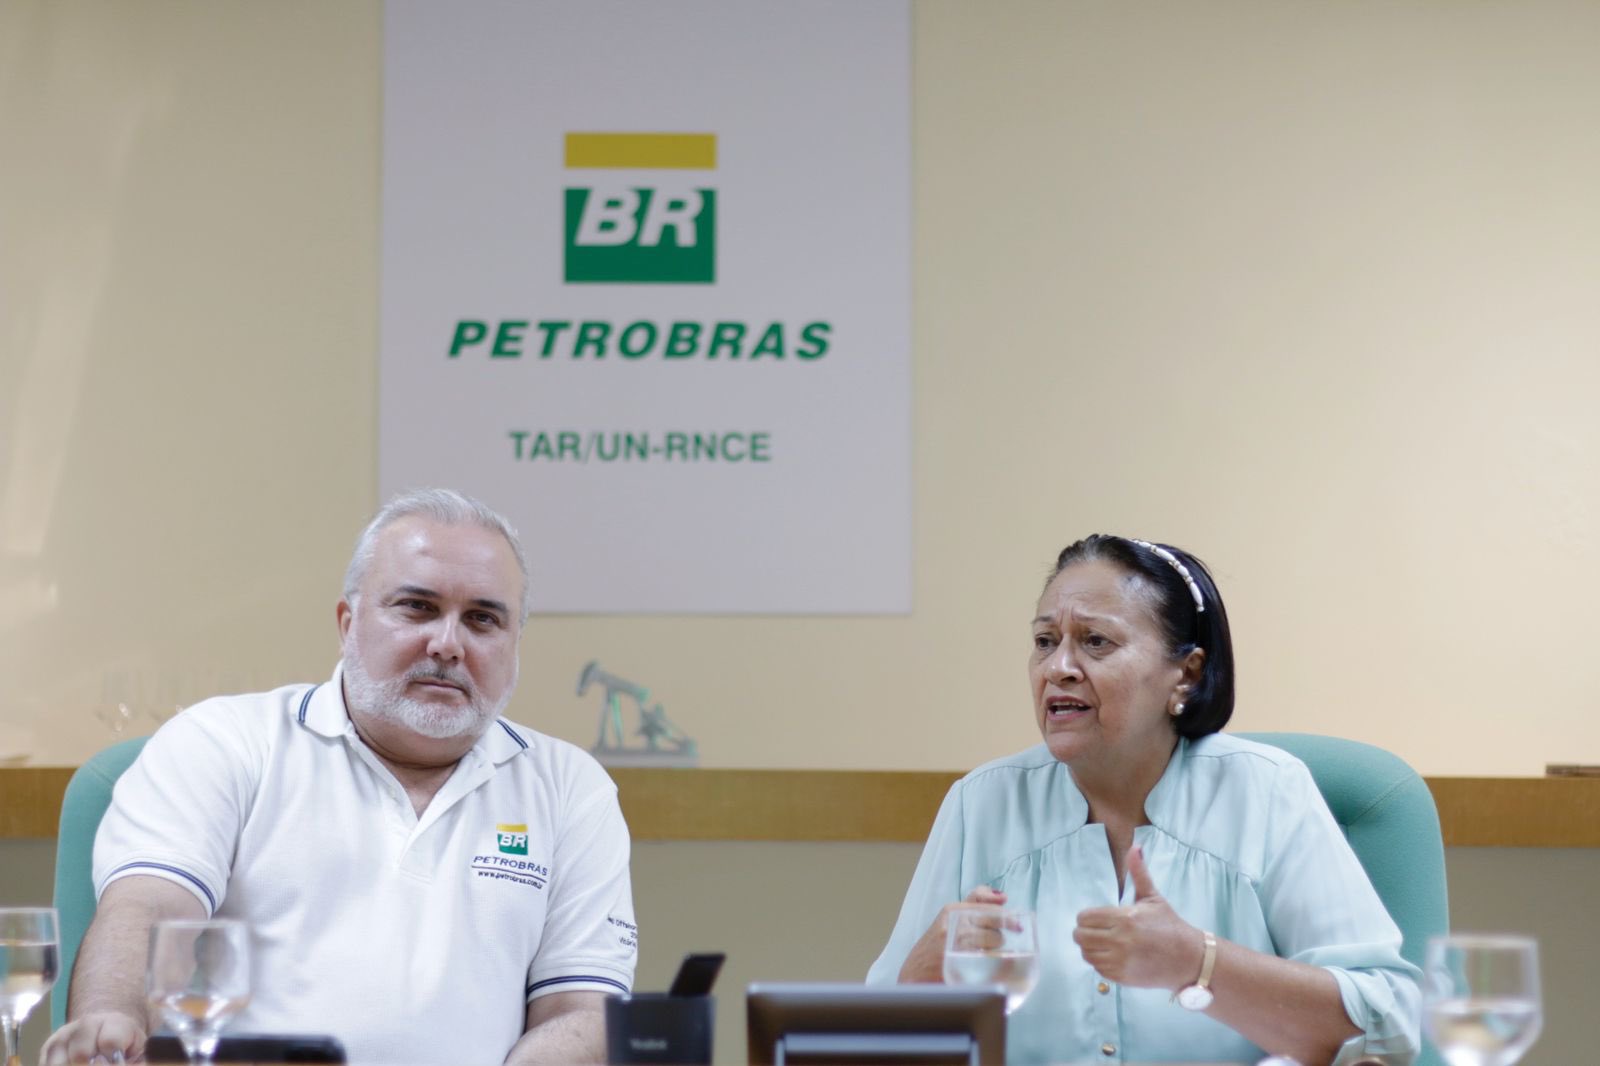 O Rio Grande do Norte já é um dos grandes polos de atuação da Petrobras em empreendimentos de petróleo e gás. O novo presidente da estatal, Jean Paul Prates, pretende expandir os projetos no estado para novas atividades de energias renováveis.